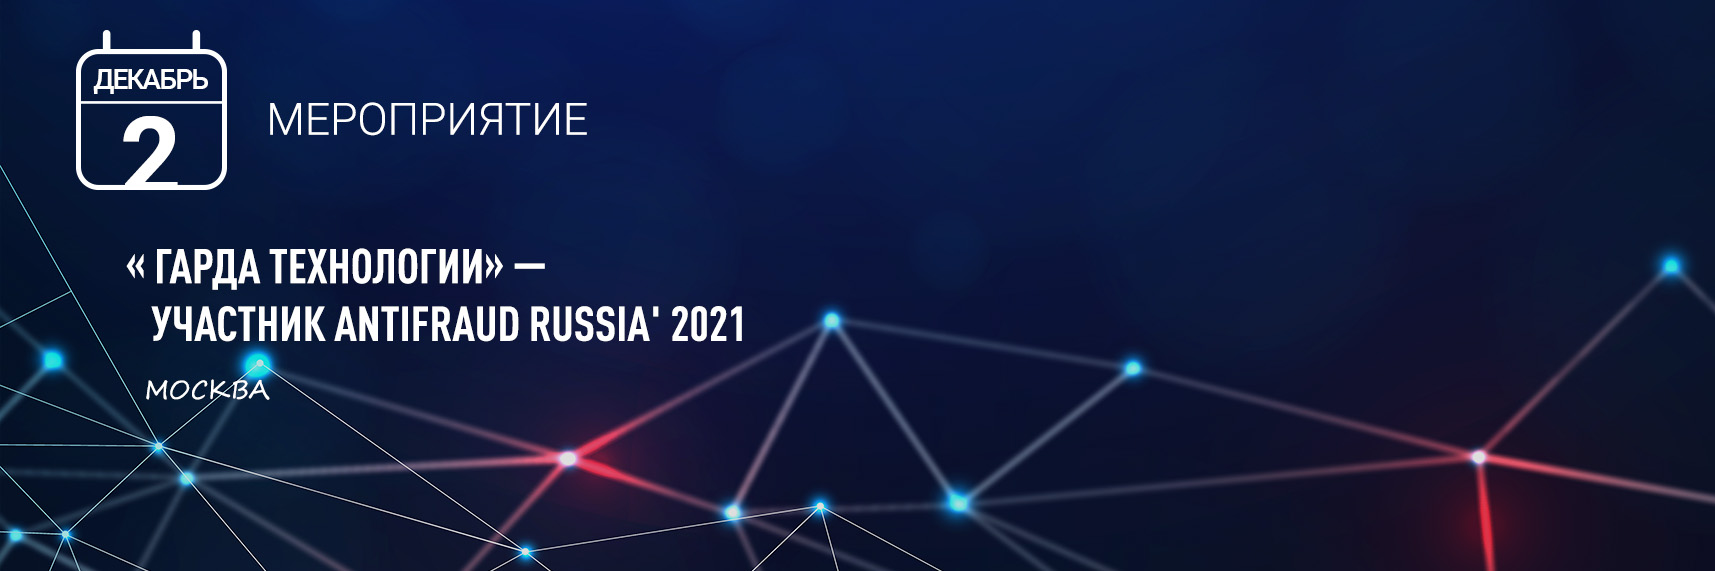 «Гарда Технологии» на ANTIFRAUD RUSSIA' 2021